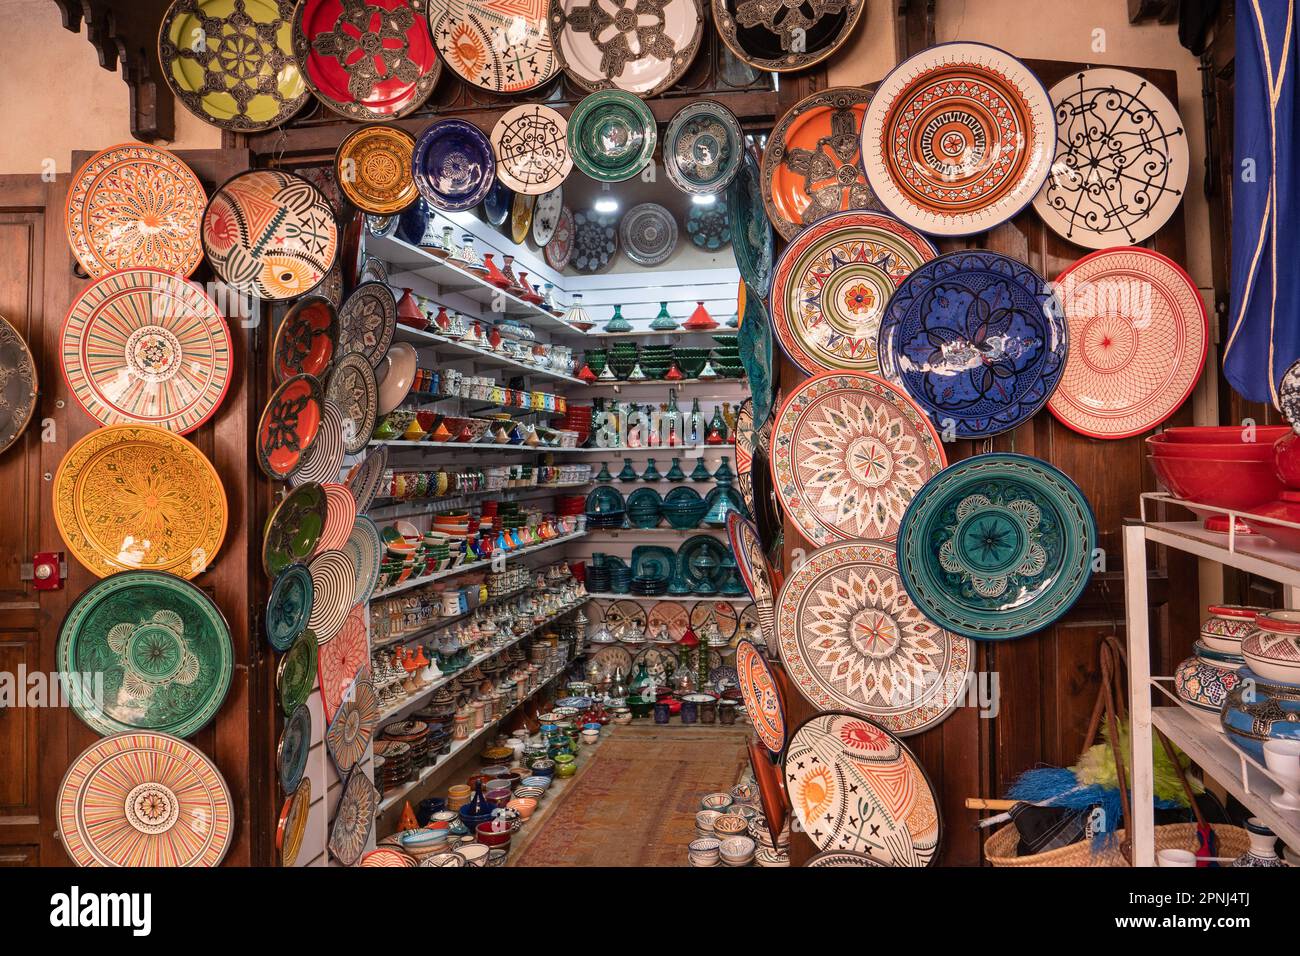 Schön dekorierter Souvenirladen mit traditioneller marokkanischer Keramik, Souvenir shop with traditional moroccan pottery Stock Photo